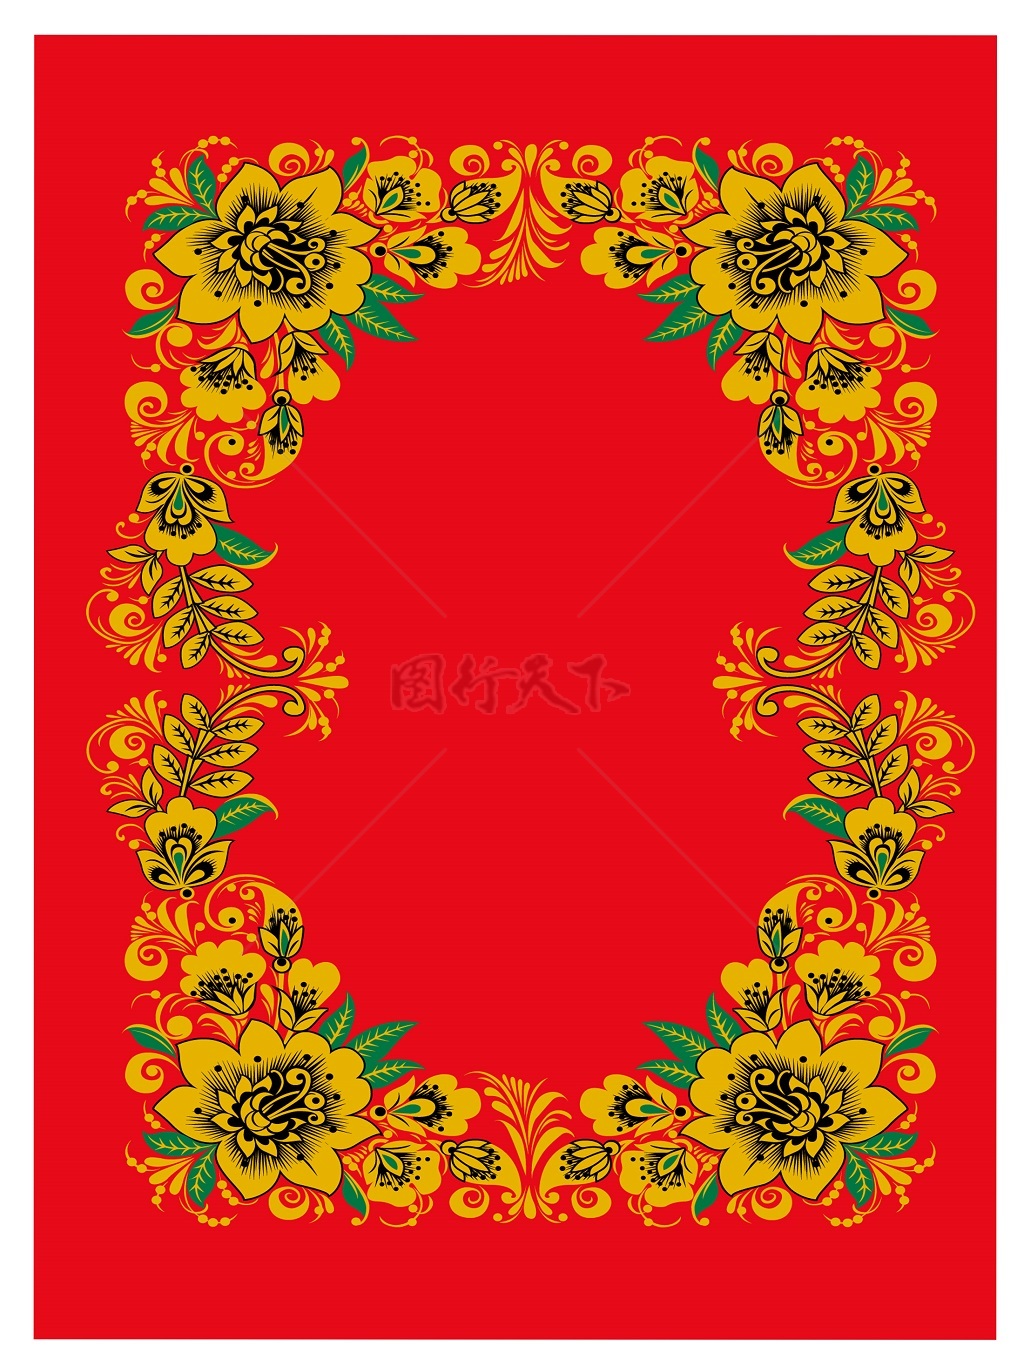  高清 传统 欧式俄式花边 花卉图案背景贴图 长方形环形花边